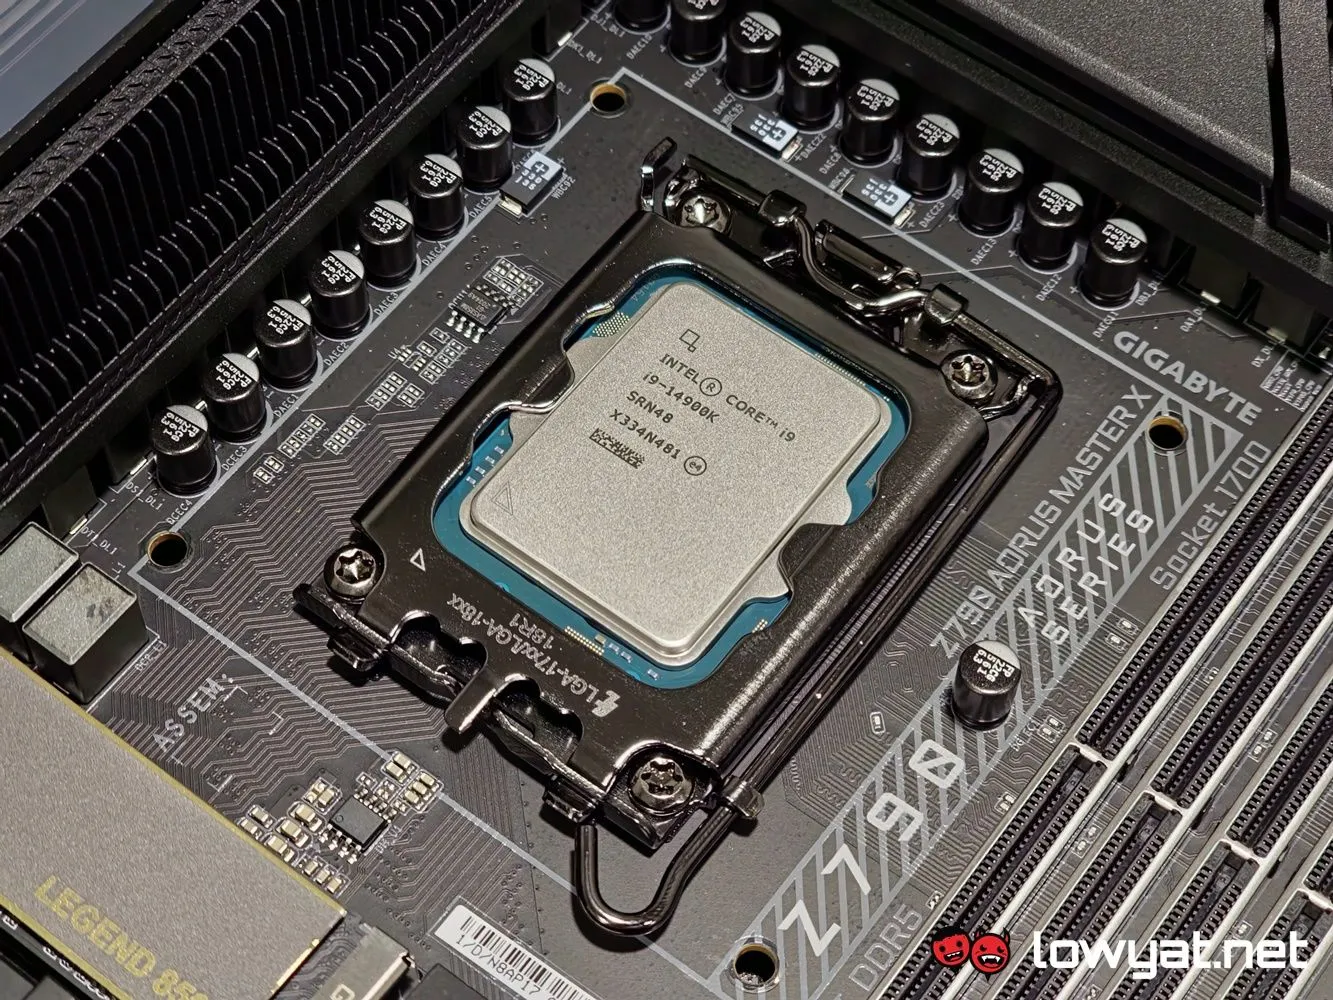 Intel Core i9 14900K product shot 1 1